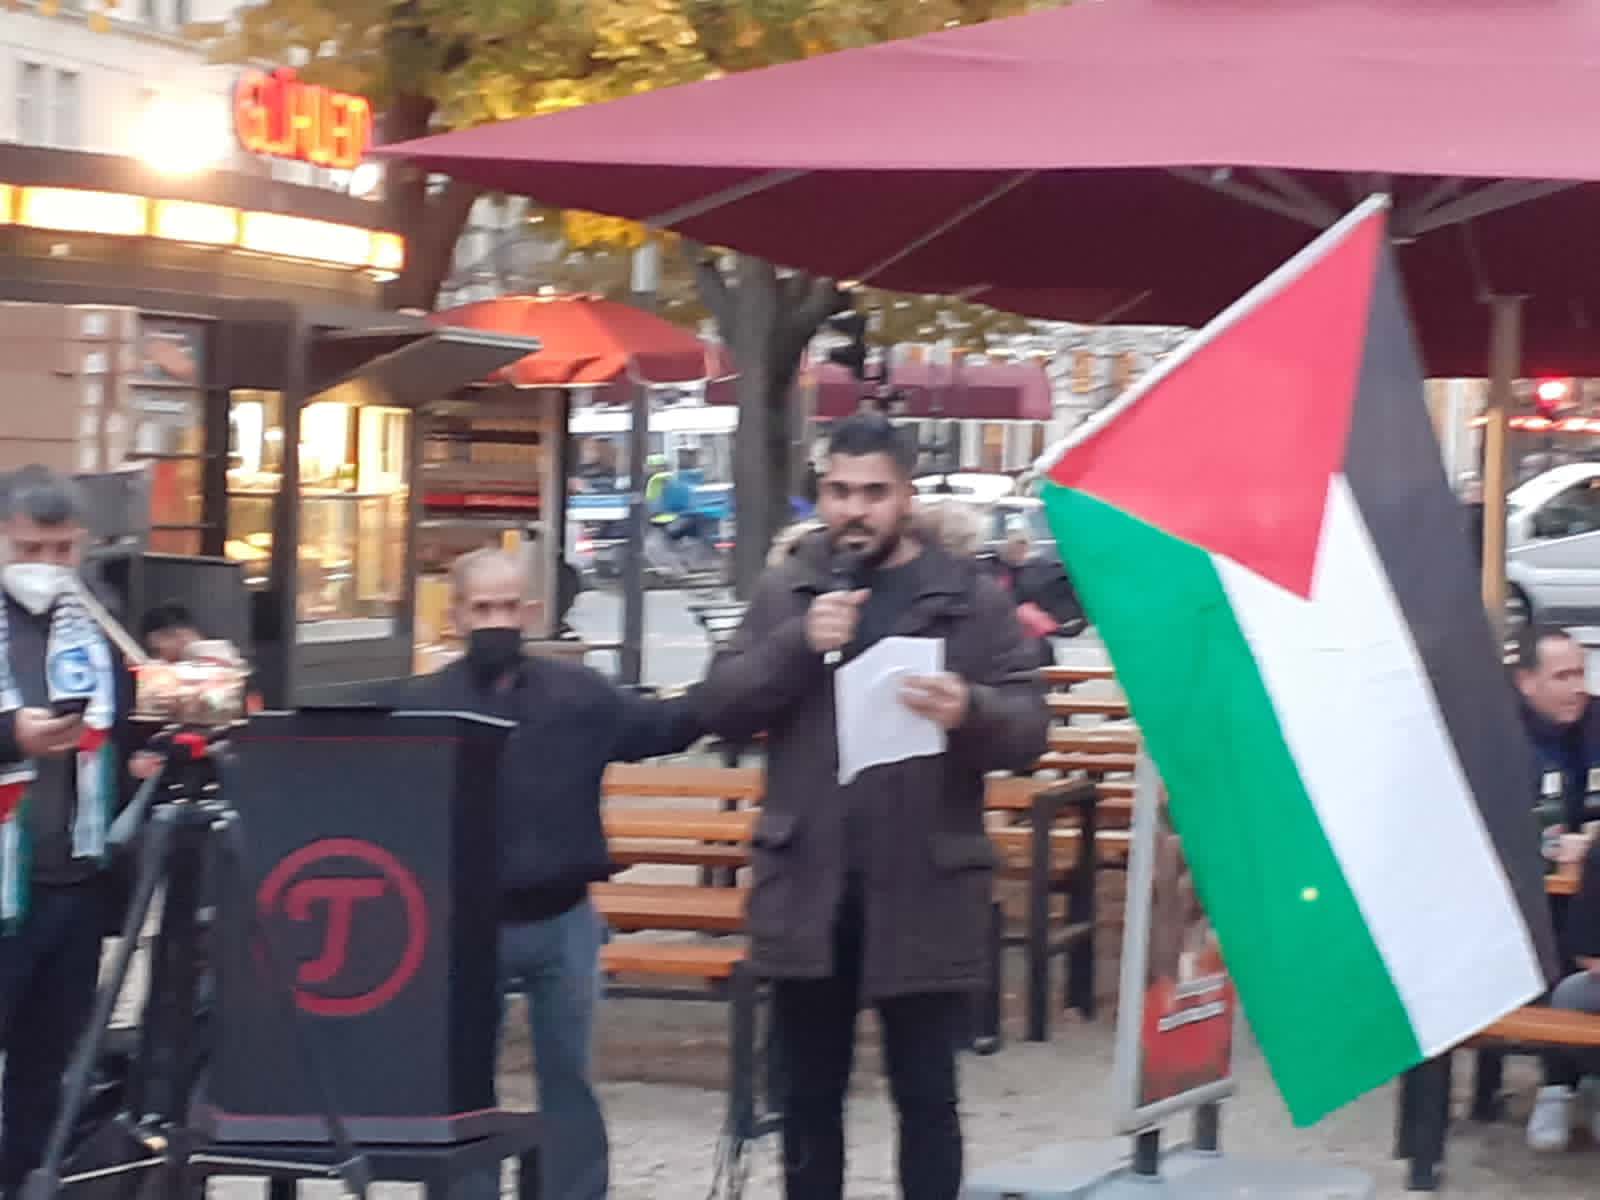 وقفة احتجاج واعتصام أمام السفارة البريطانية بمشاركة أبناء الشعب الفلسطيني في برلين